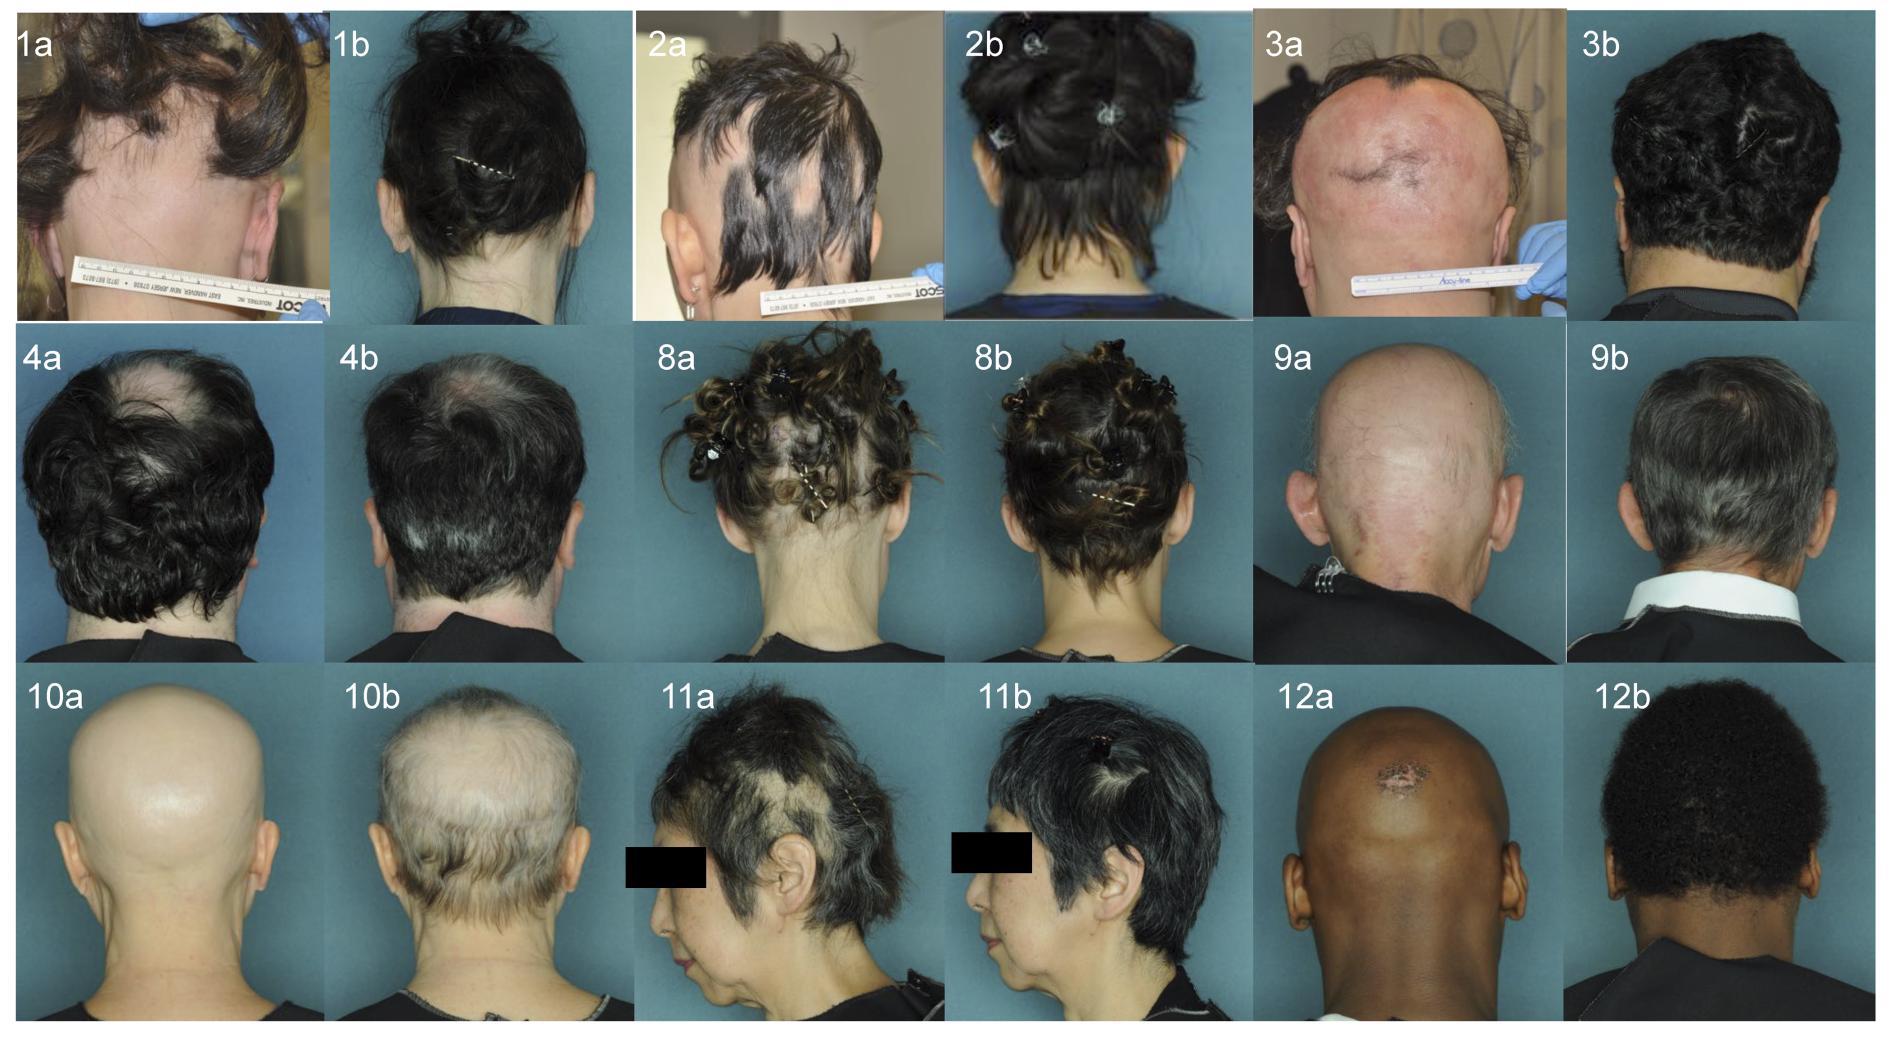 ruxolitinib alopecia areata results 01 - Alopecia Areata Treatment: What Future Holds